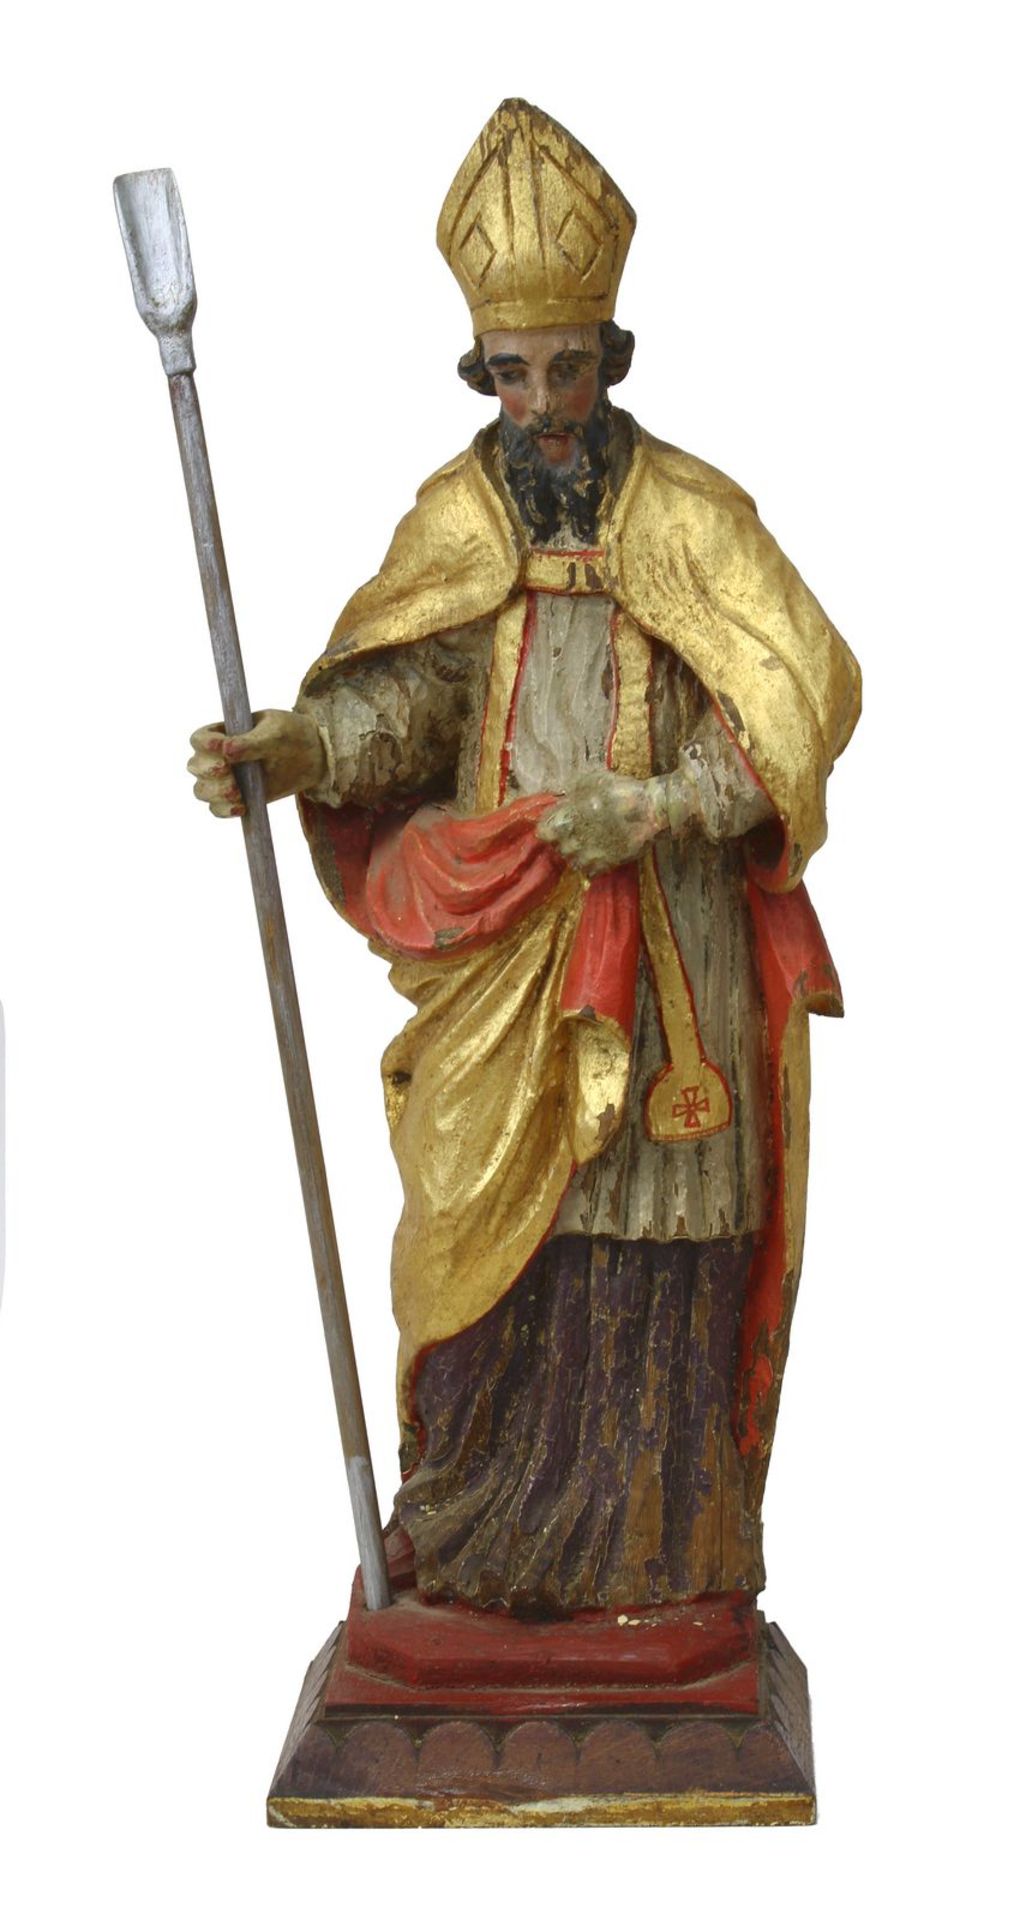 Heiliger Bischof, 19. Jh., Holz geschnitzt u. farbig gefasst, rückseitig geflacht, in vollem